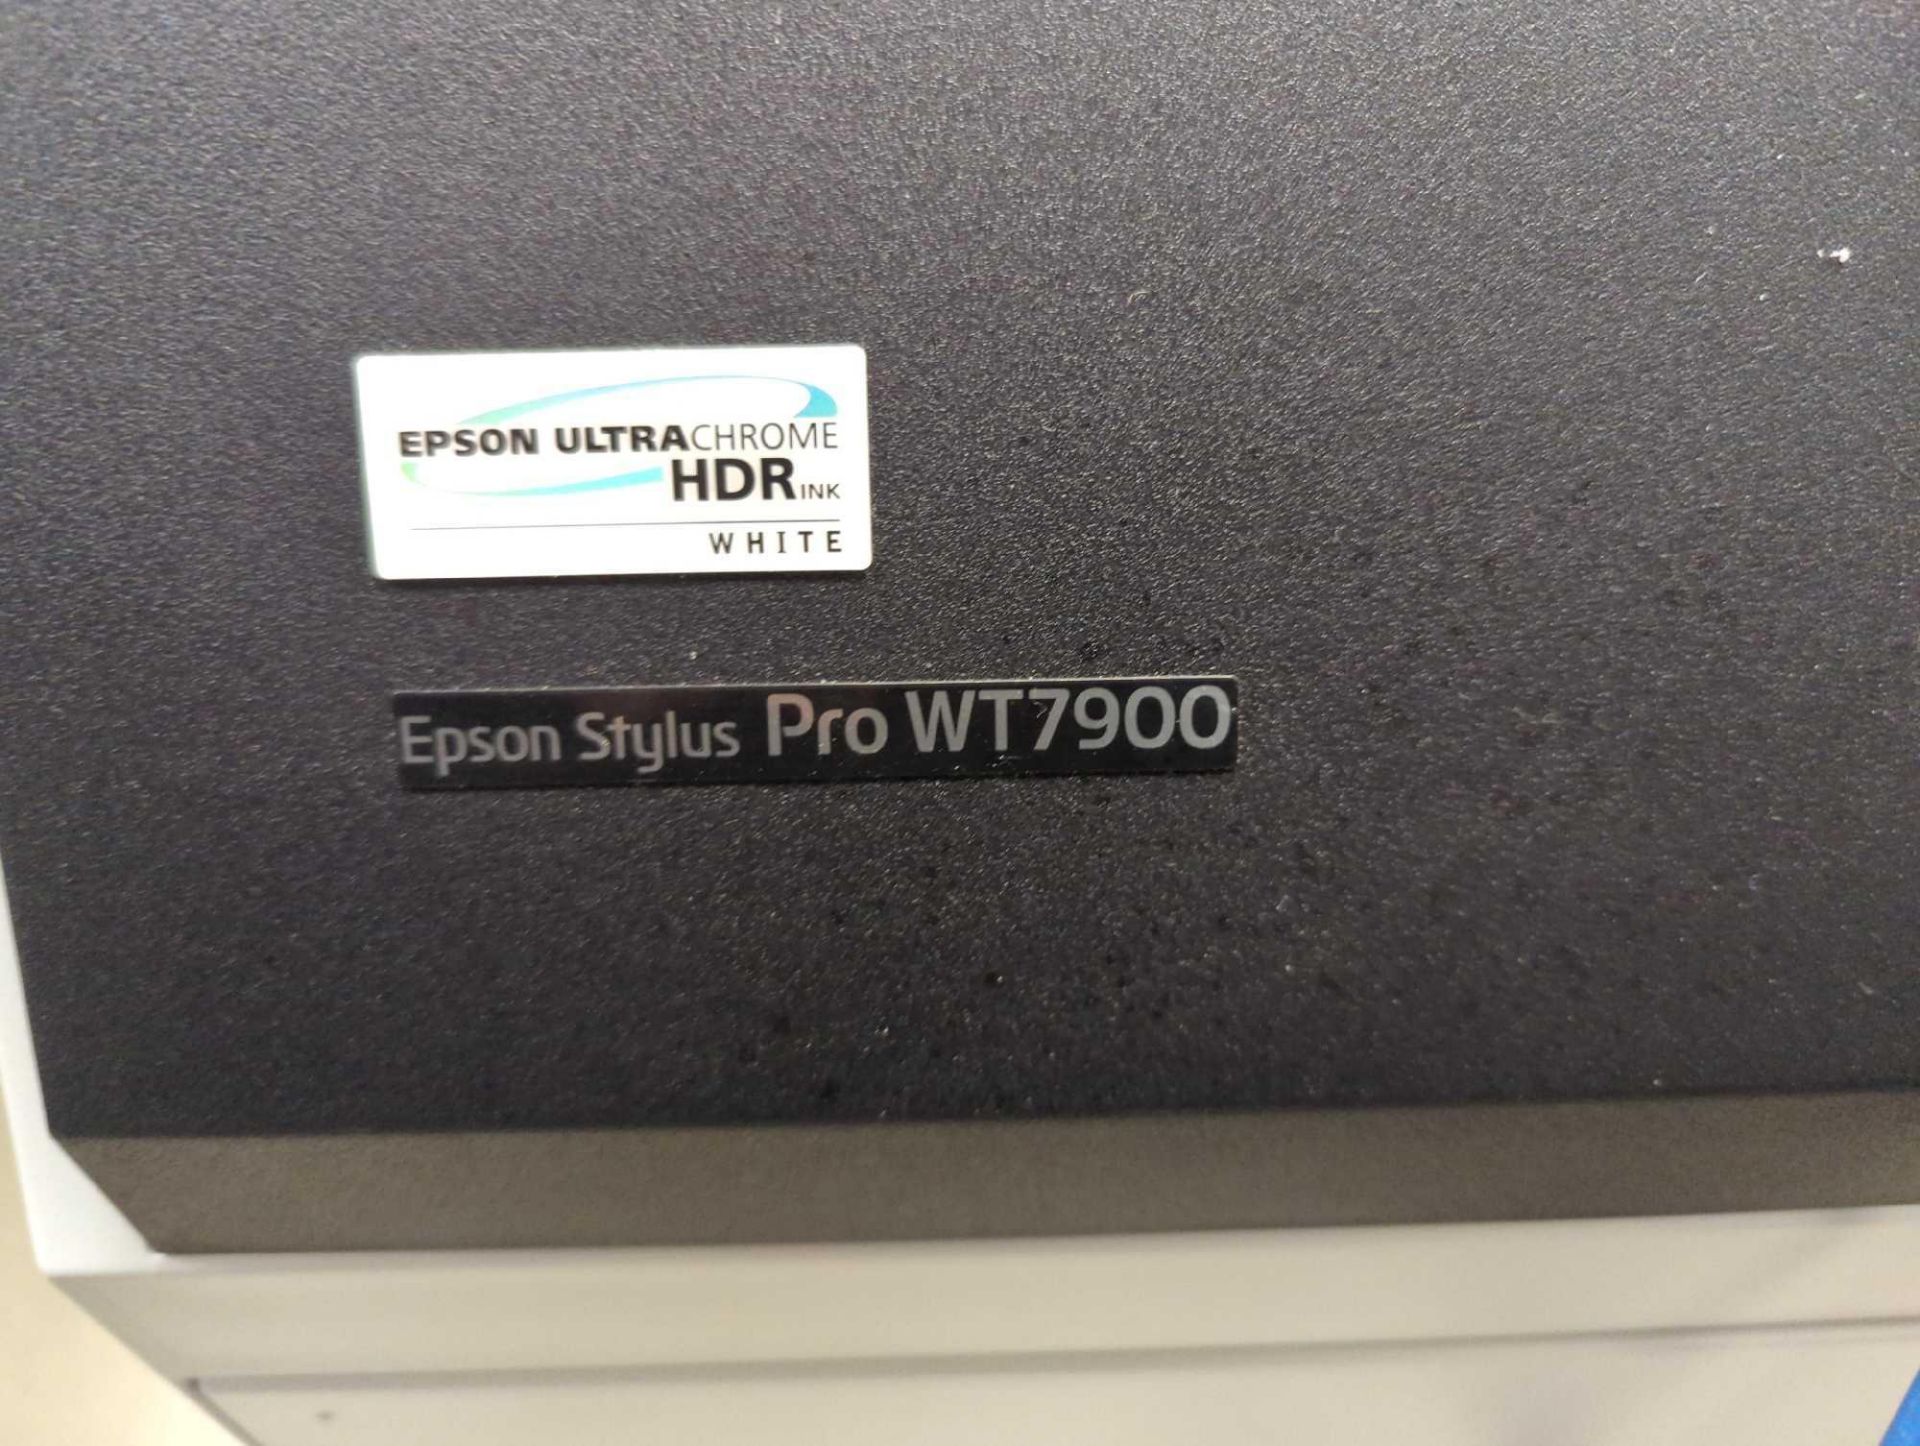 Epson Stylus Pro WT7900 - Image 3 of 12